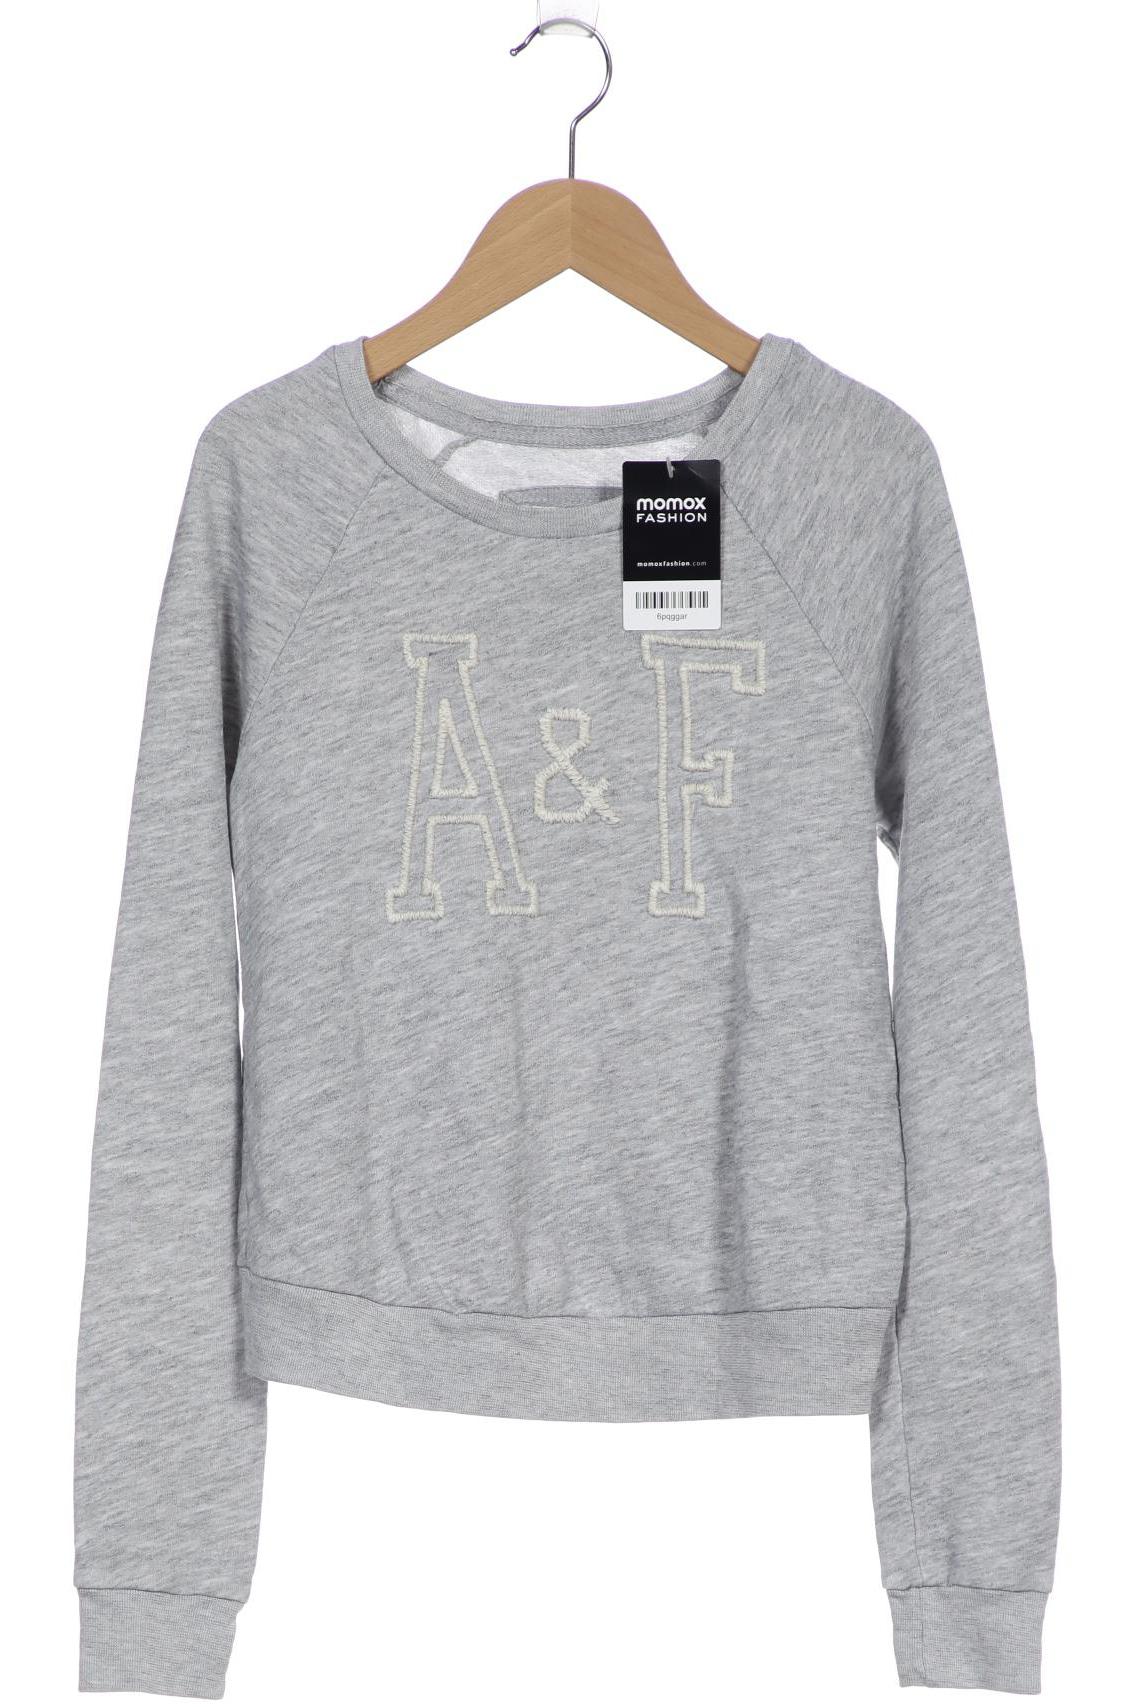 Abercrombie & Fitch Damen Sweatshirt, grau, Gr. 34 von Abercrombie & Fitch